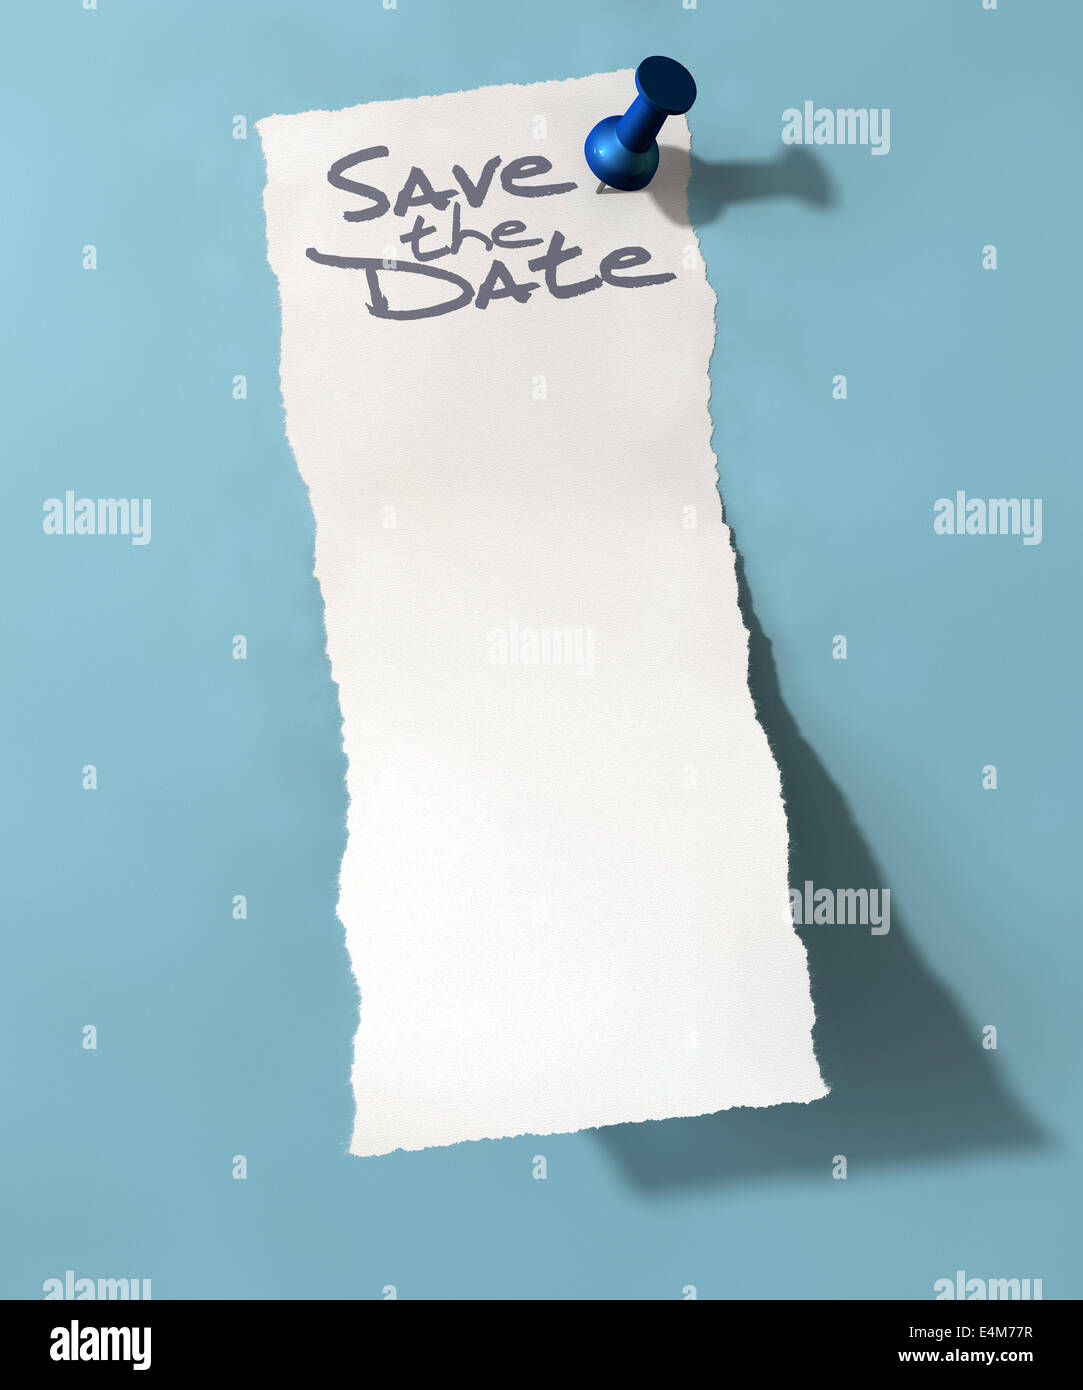 Une note qui dit blanc déchiré save the date peeling vers le haut attaché à un mur bleu isolé par un bouton poussoir bleu Banque D'Images